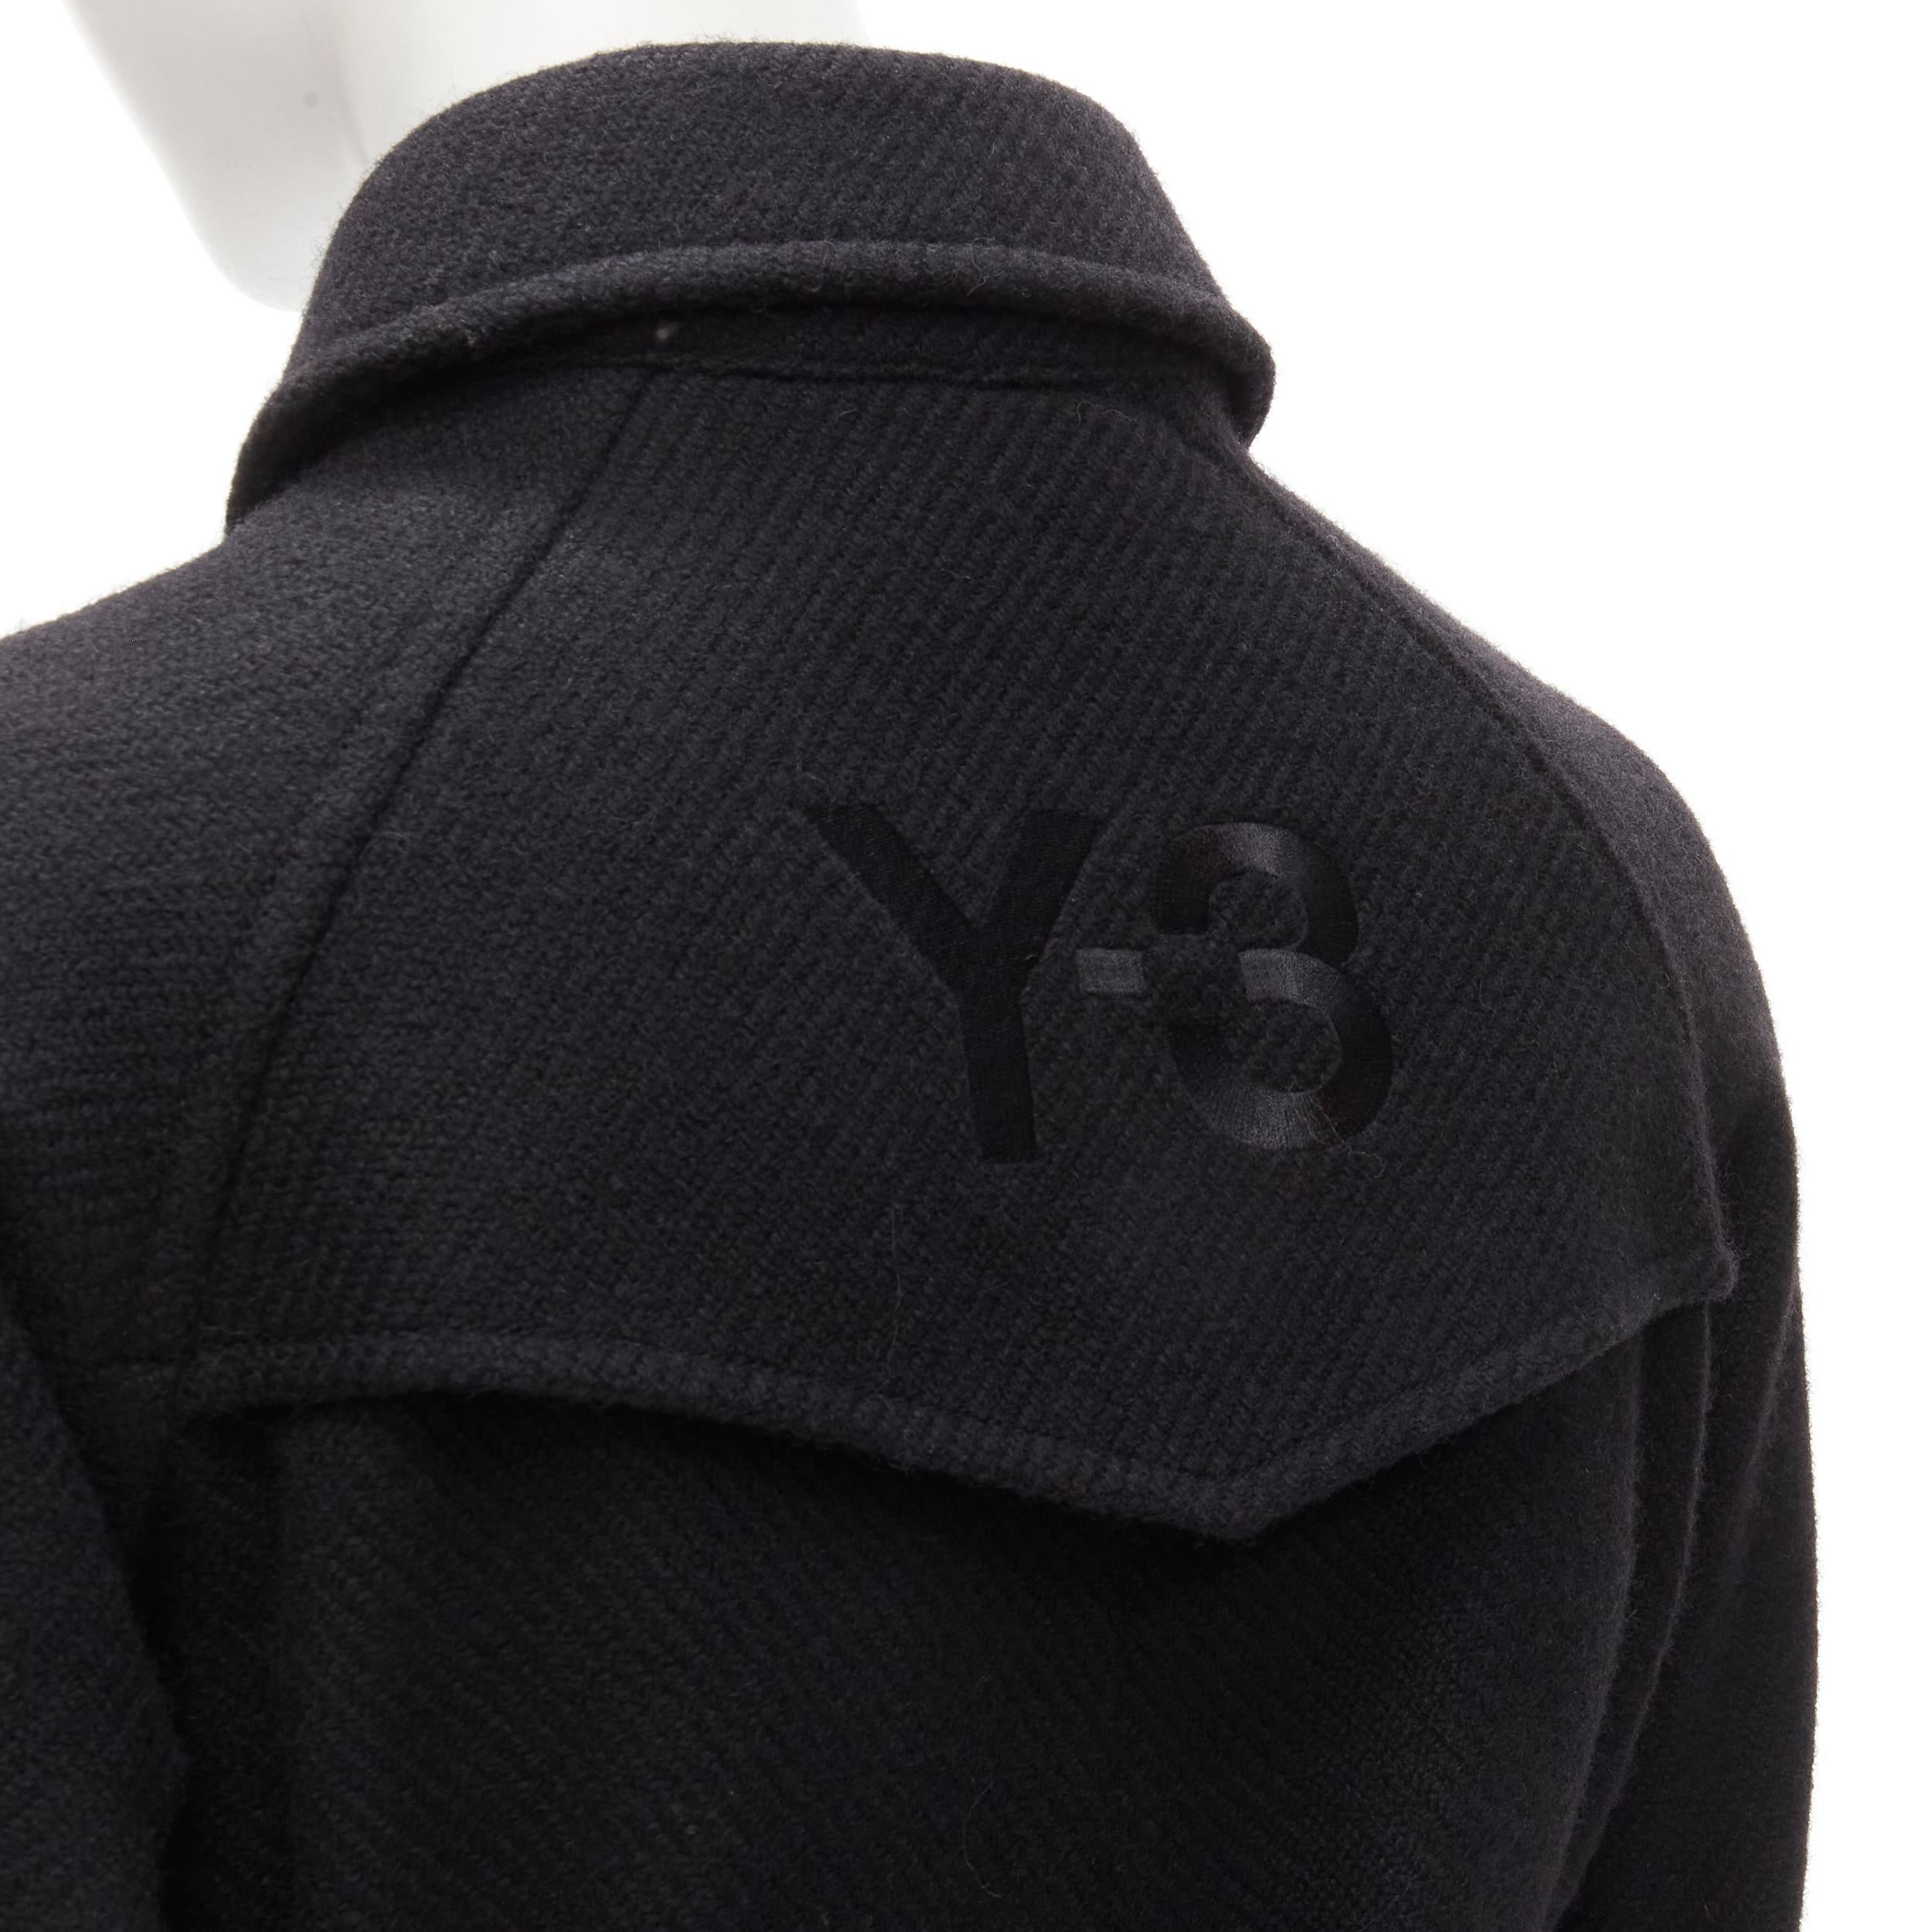 Y3 YOHJI YAMAMOTO ADIDAS Schwarzer doppelreihiger Umhang-Trench aus Wolle XS
Marke: Y3
MATERIAL: Fühlt sich an wie Wolle
Farbe: Schwarz
Muster: Solide
Verschluss: Knopf
Extra Detail: Zweireihiger Frontverschluss. Y3-Logo-Stickerei auf der Rückseite.